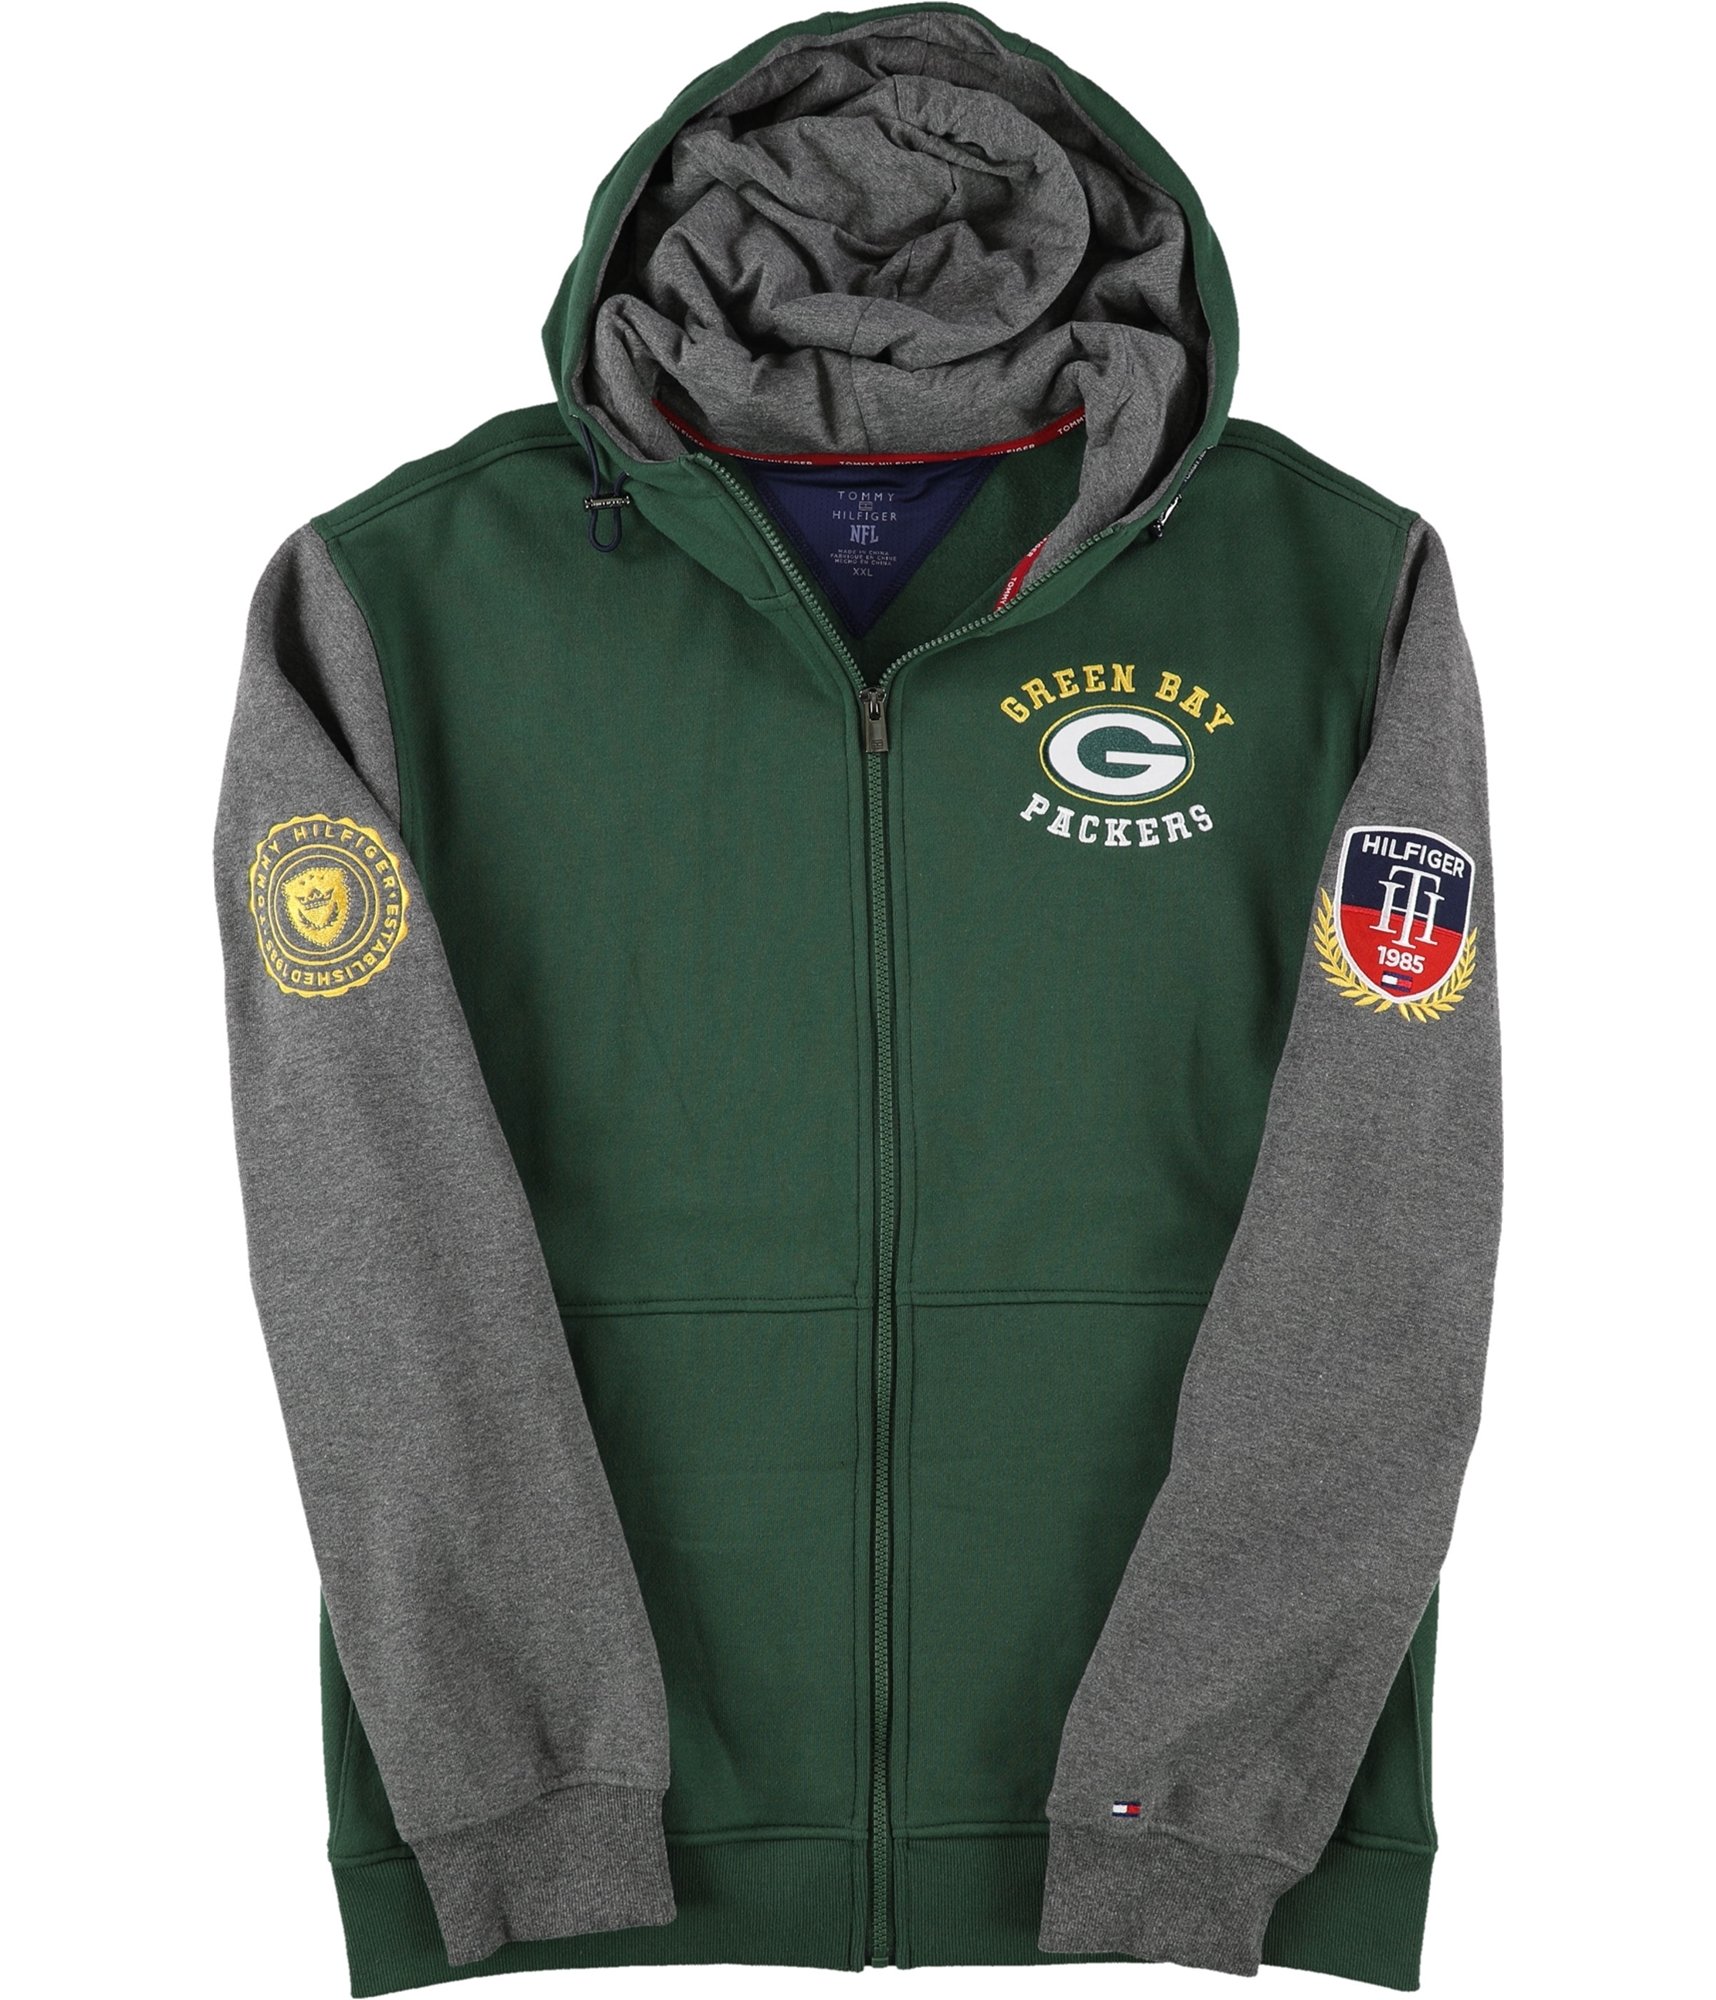 Tommy Hilfiger Mens Green Bay Packers Hoodie Sweatshirt, Green, Medium